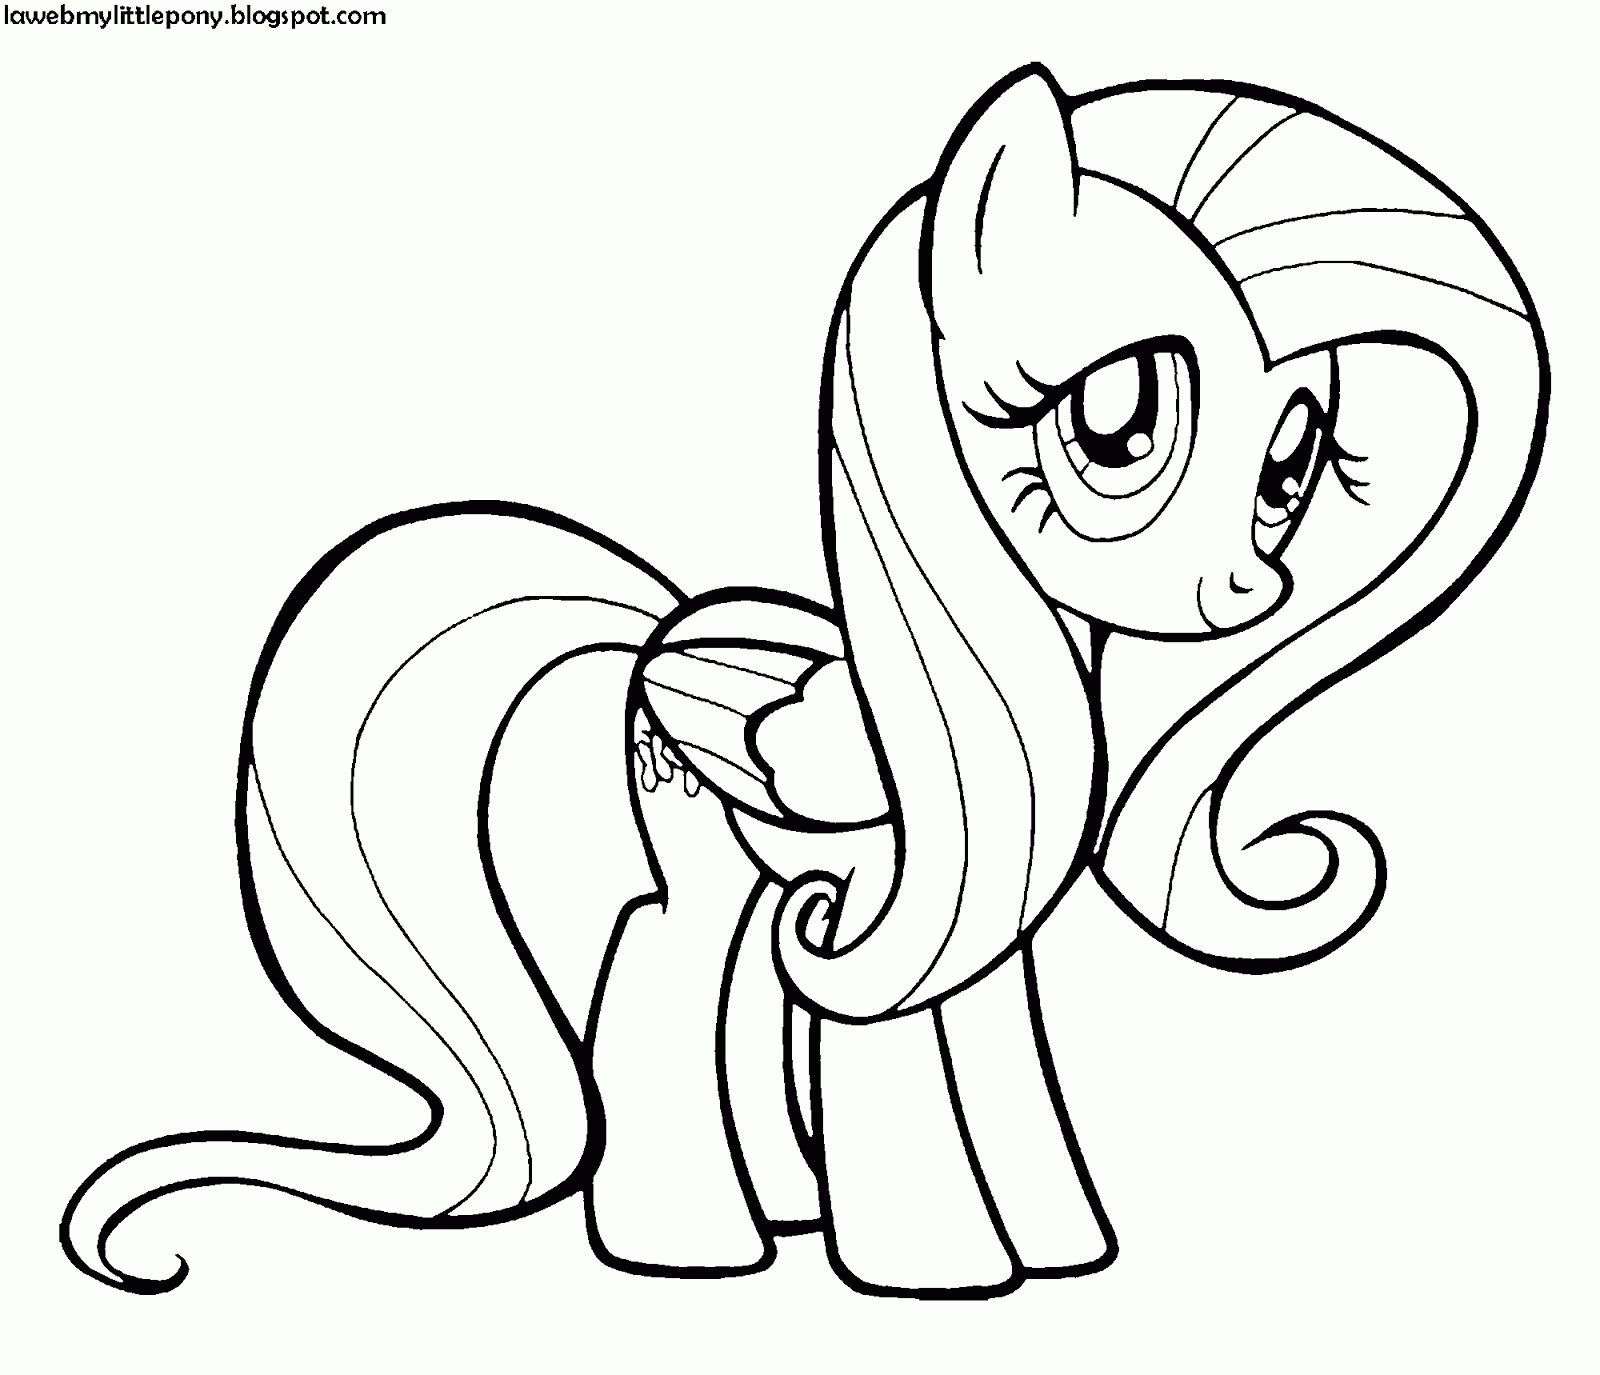 My Little Pony: Dibujos para colorear de Fluttershy de My Little Pony